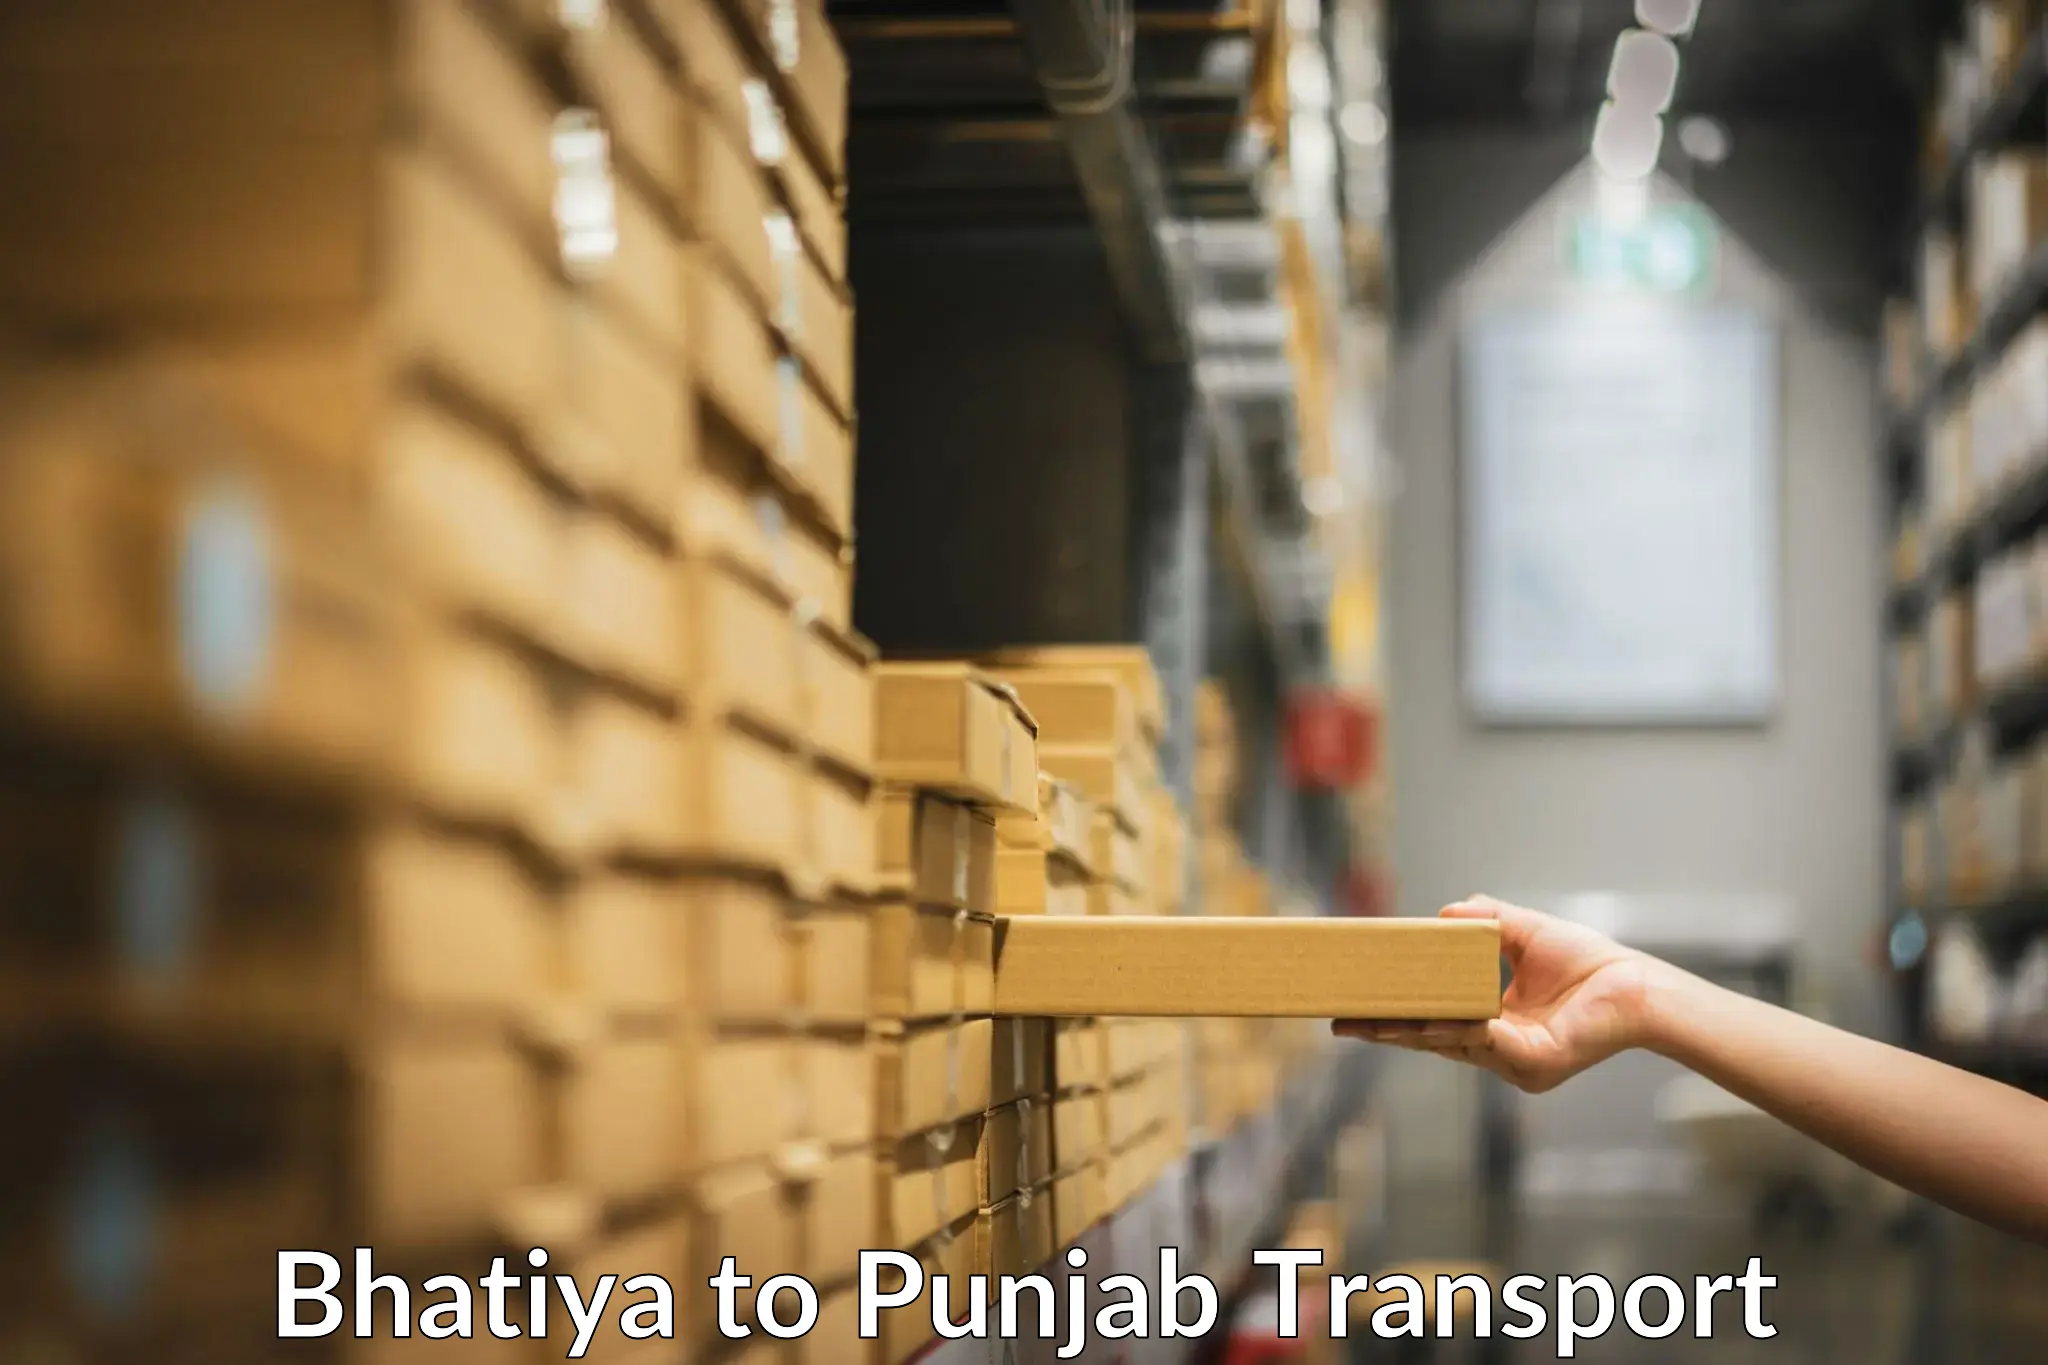 Air freight transport services Bhatiya to Sirhind Fatehgarh